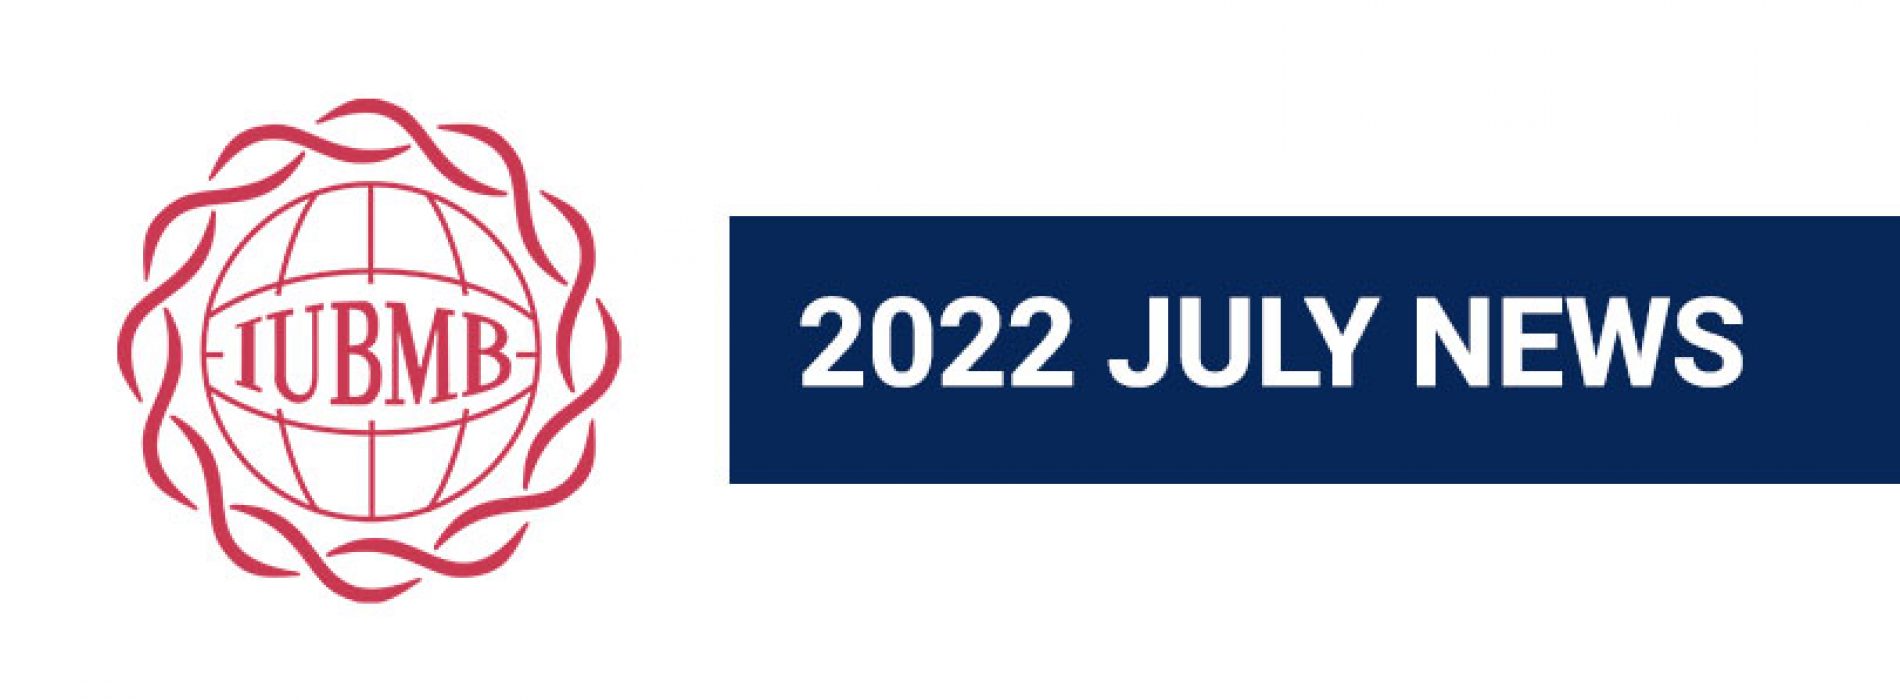 2022 IUBMB July News